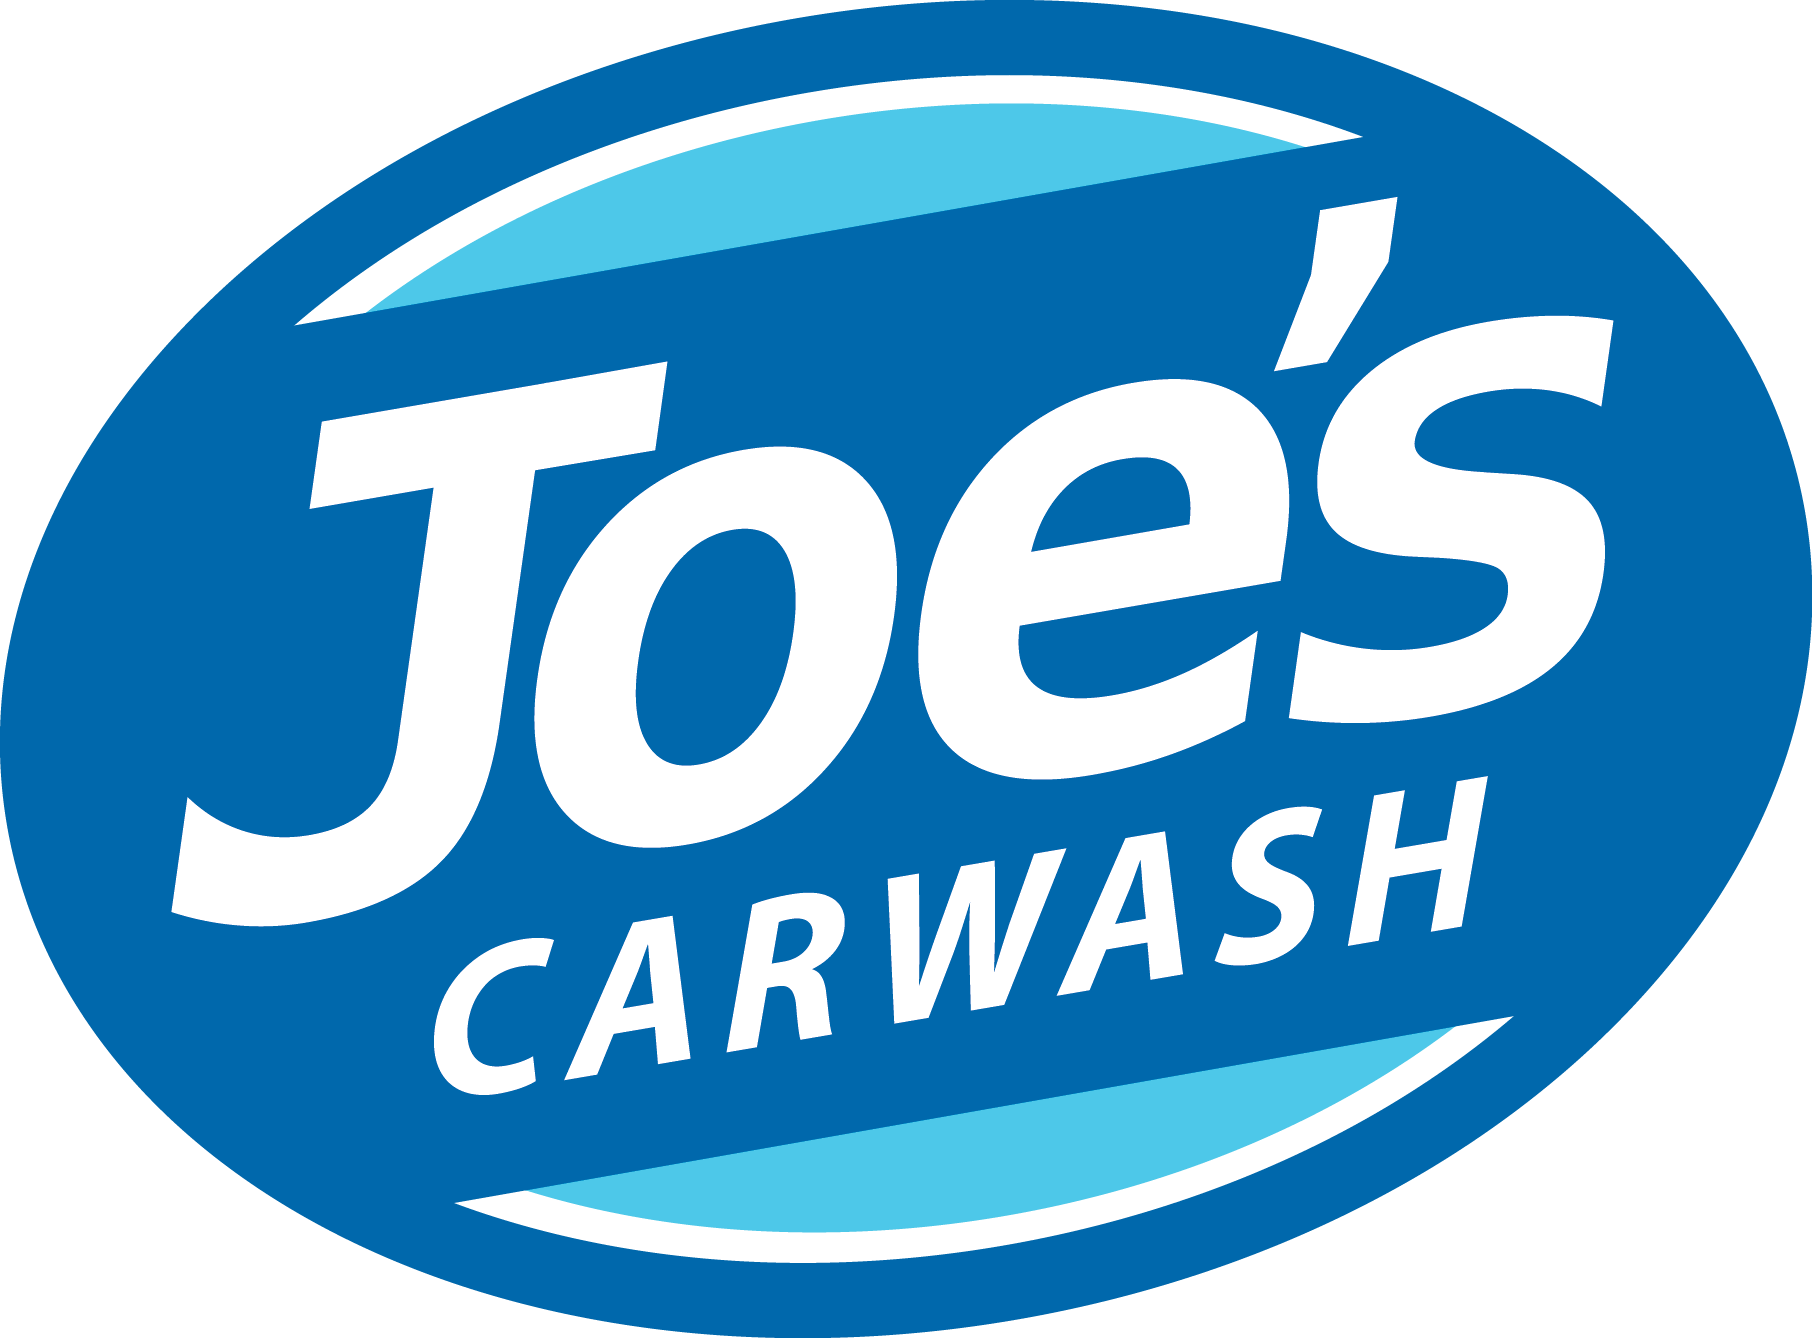 Joe's Carwash